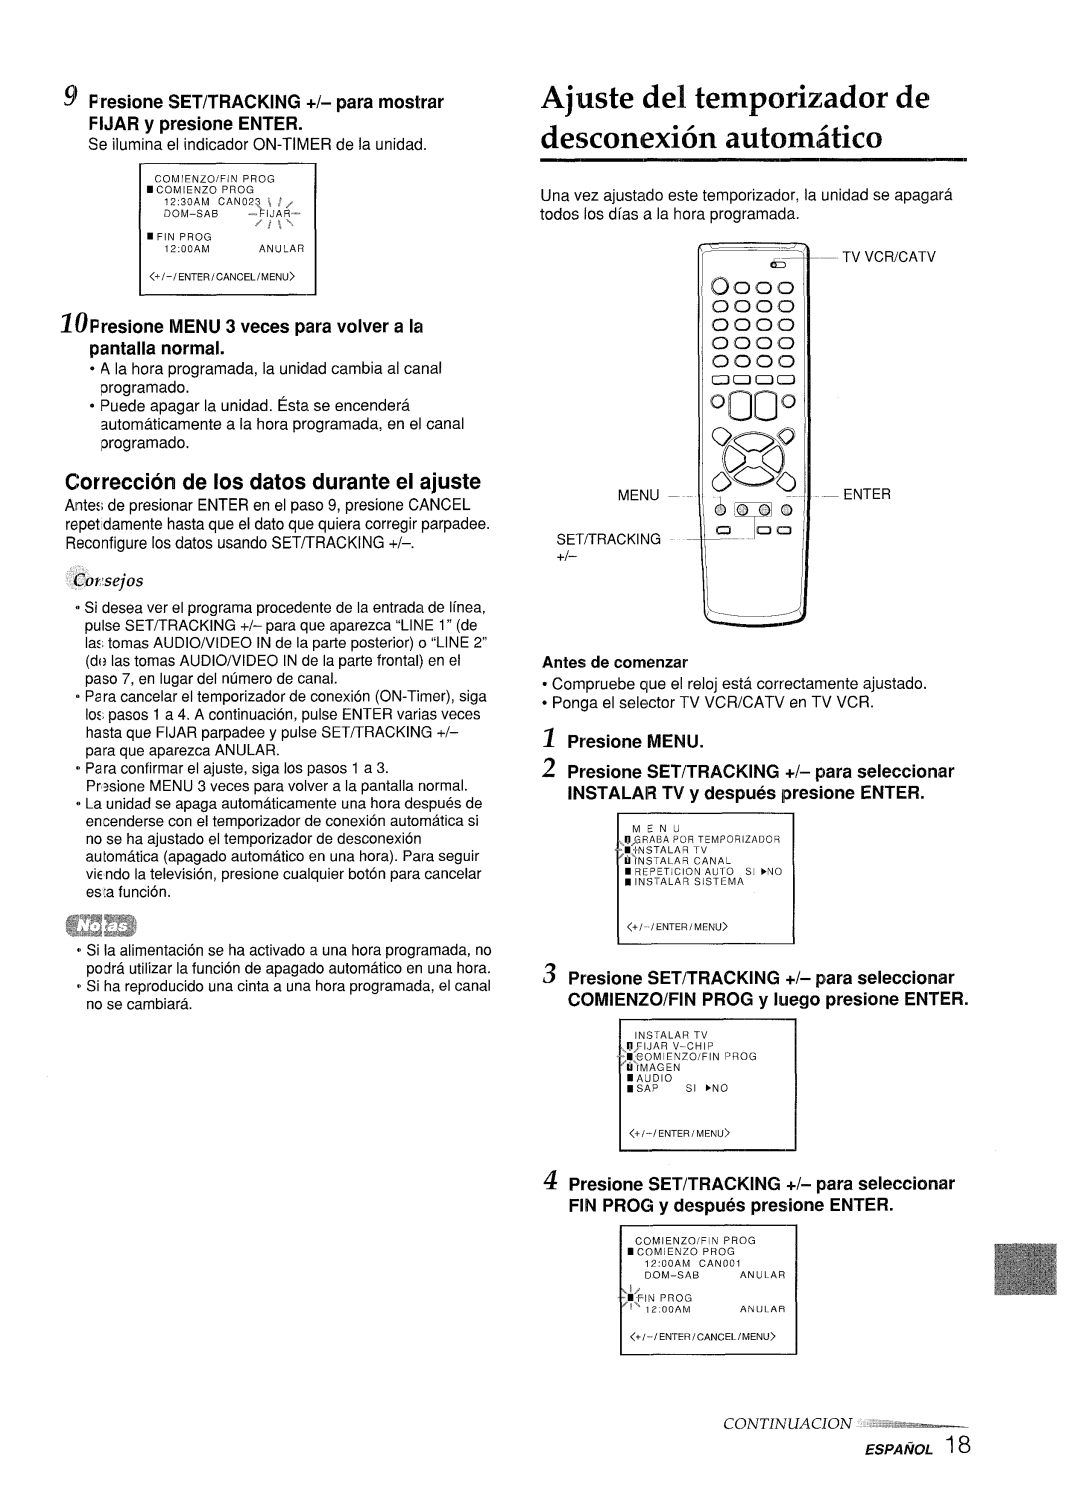 Aiwa VX-S205U, VX-S135U Ajuste del tempcwizador de desconexion autorniitico, Correction de Ios dates durante el ajuste 